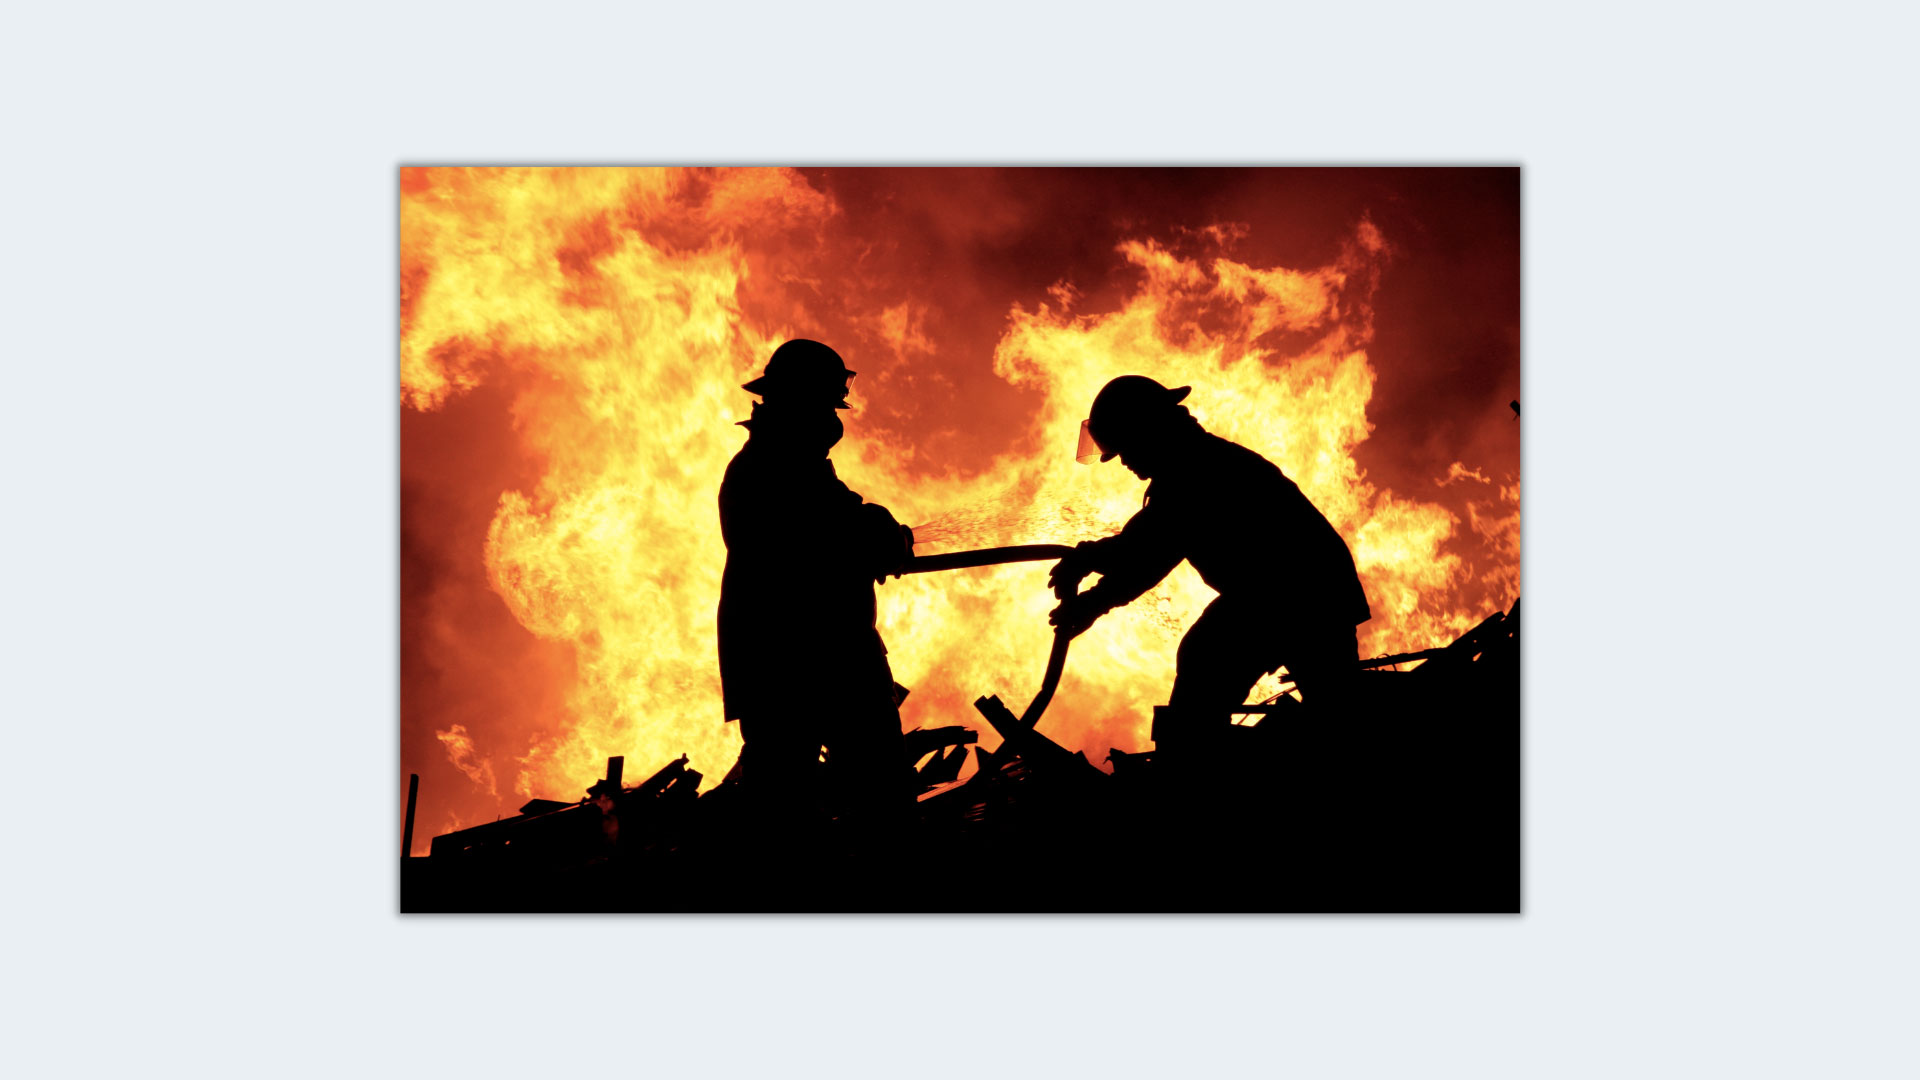 Prevenzione e Protezione Antincendio nei Luoghi di Lavoro, il nuovo decreto entra in vigore a ottobre 2022